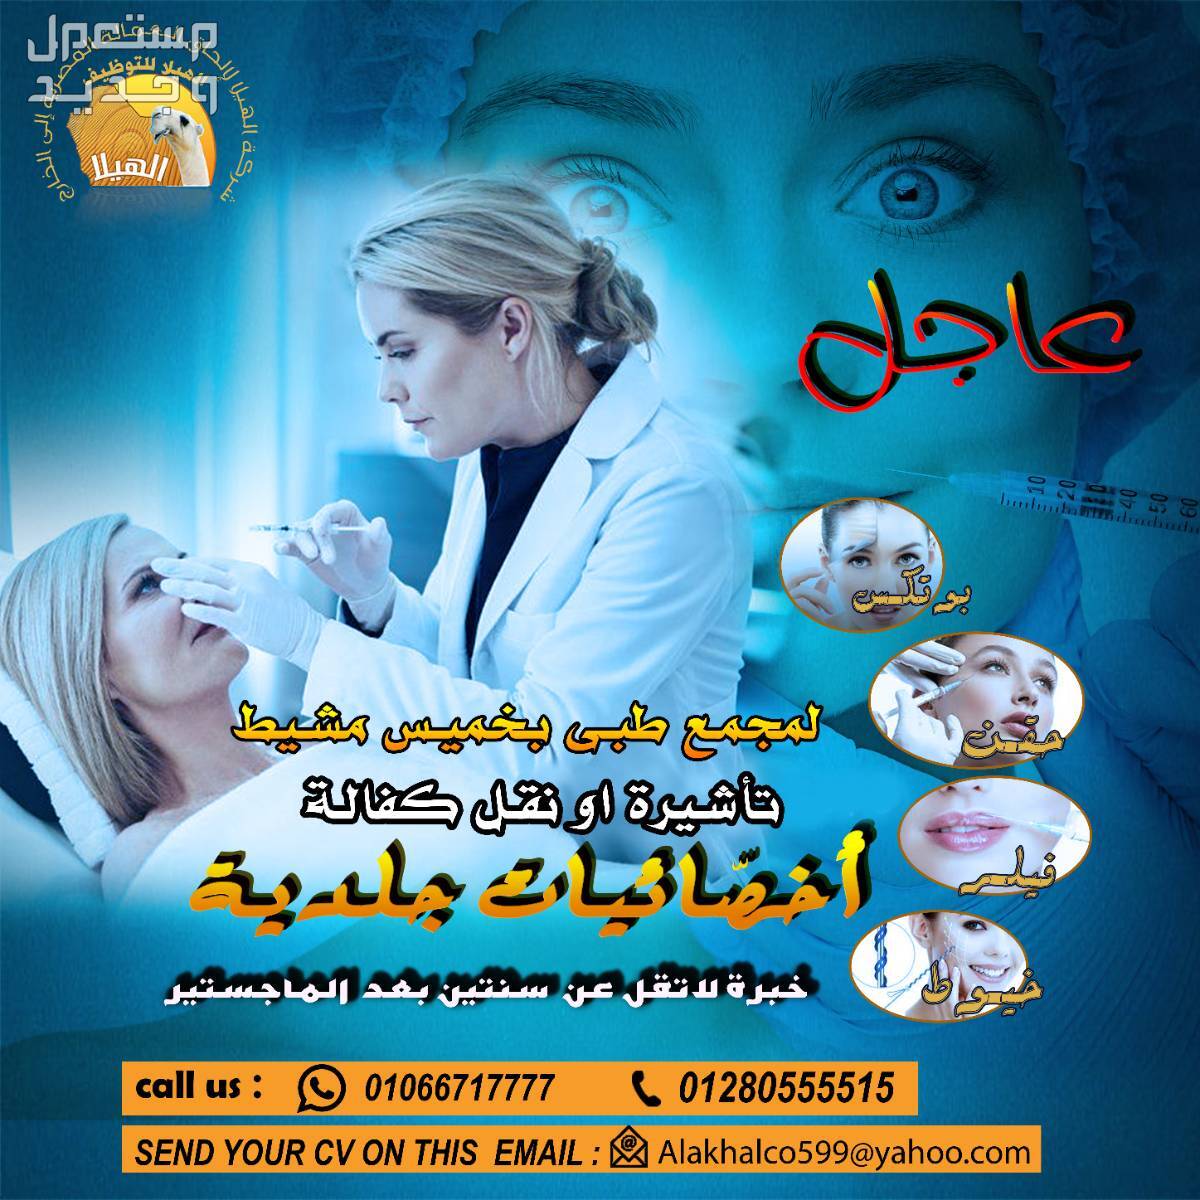 مطلوب أخصائيات جلدية لمجمع طبي بخميس مشيط في المملكة العربية السعودية.